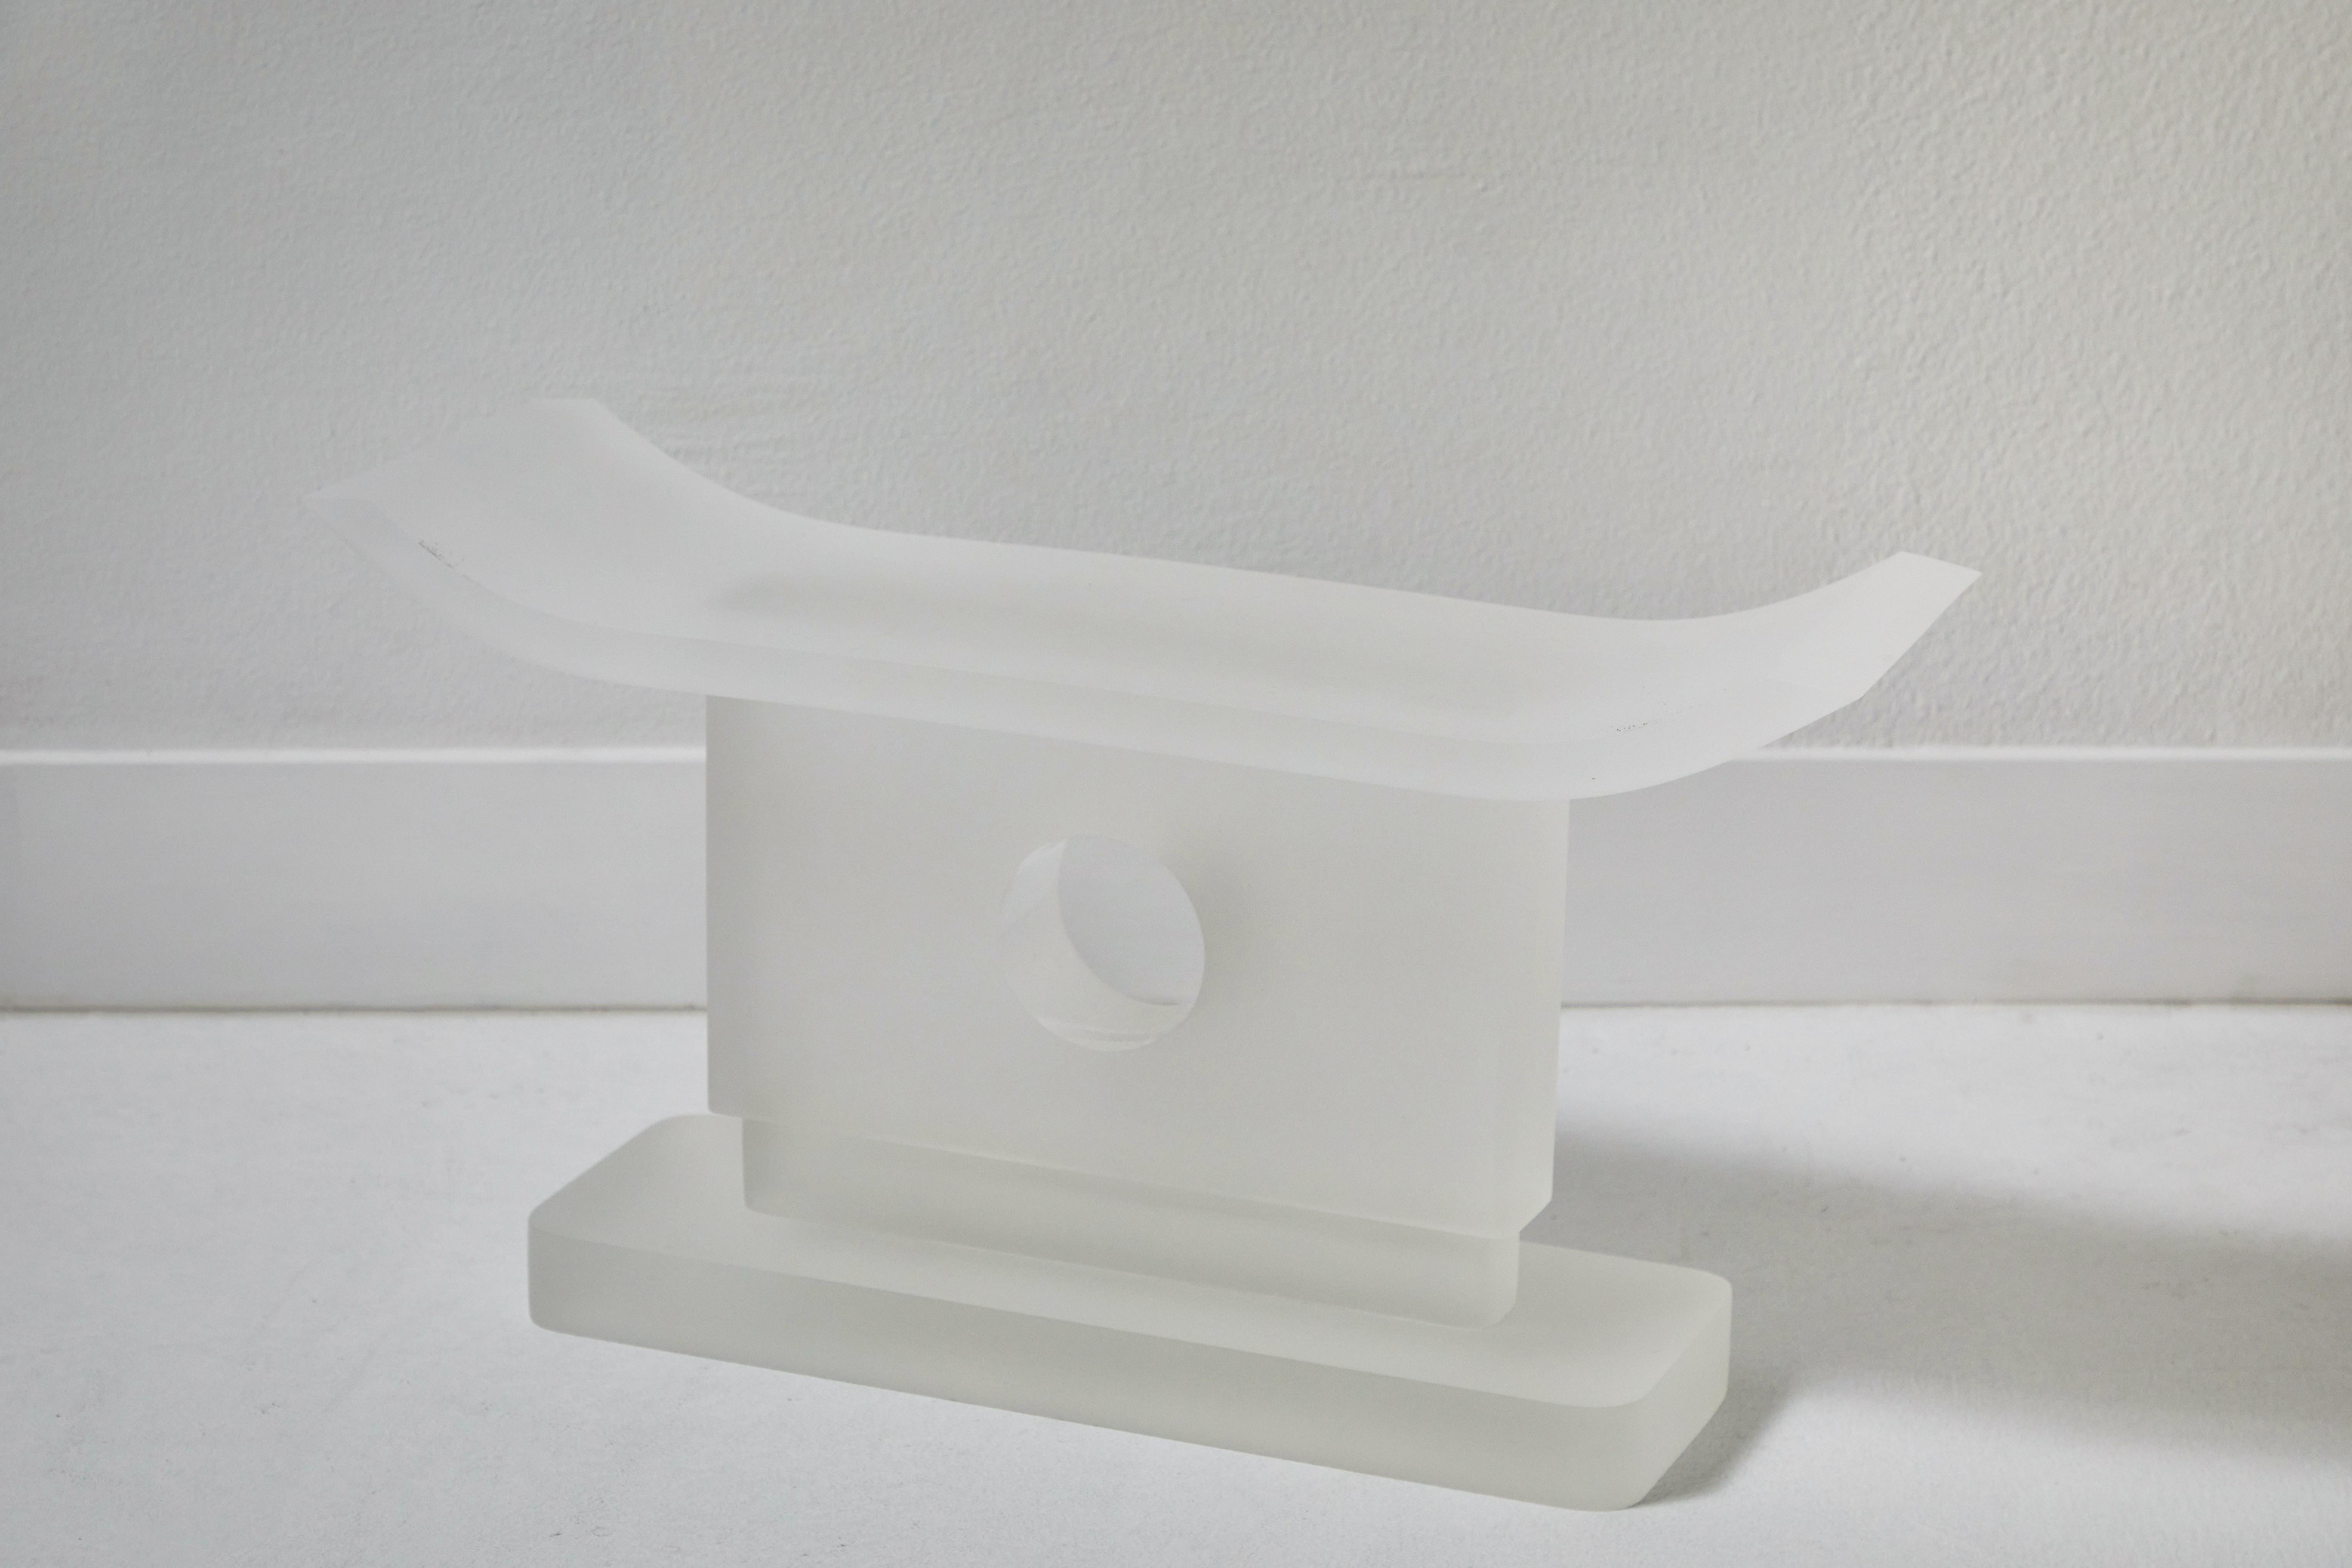 Dies ist eine einzigartige Acryl-Interpretation eines Ashanti-Hockers im Stil von Karl Springer. Seine Gesamtform spiegelt den Ashanti-Stil wider, während die Stützsäule mit einer 1-Zoll-Terrasse und einem einzigen Loch von 4 Zoll Durchmesser in der